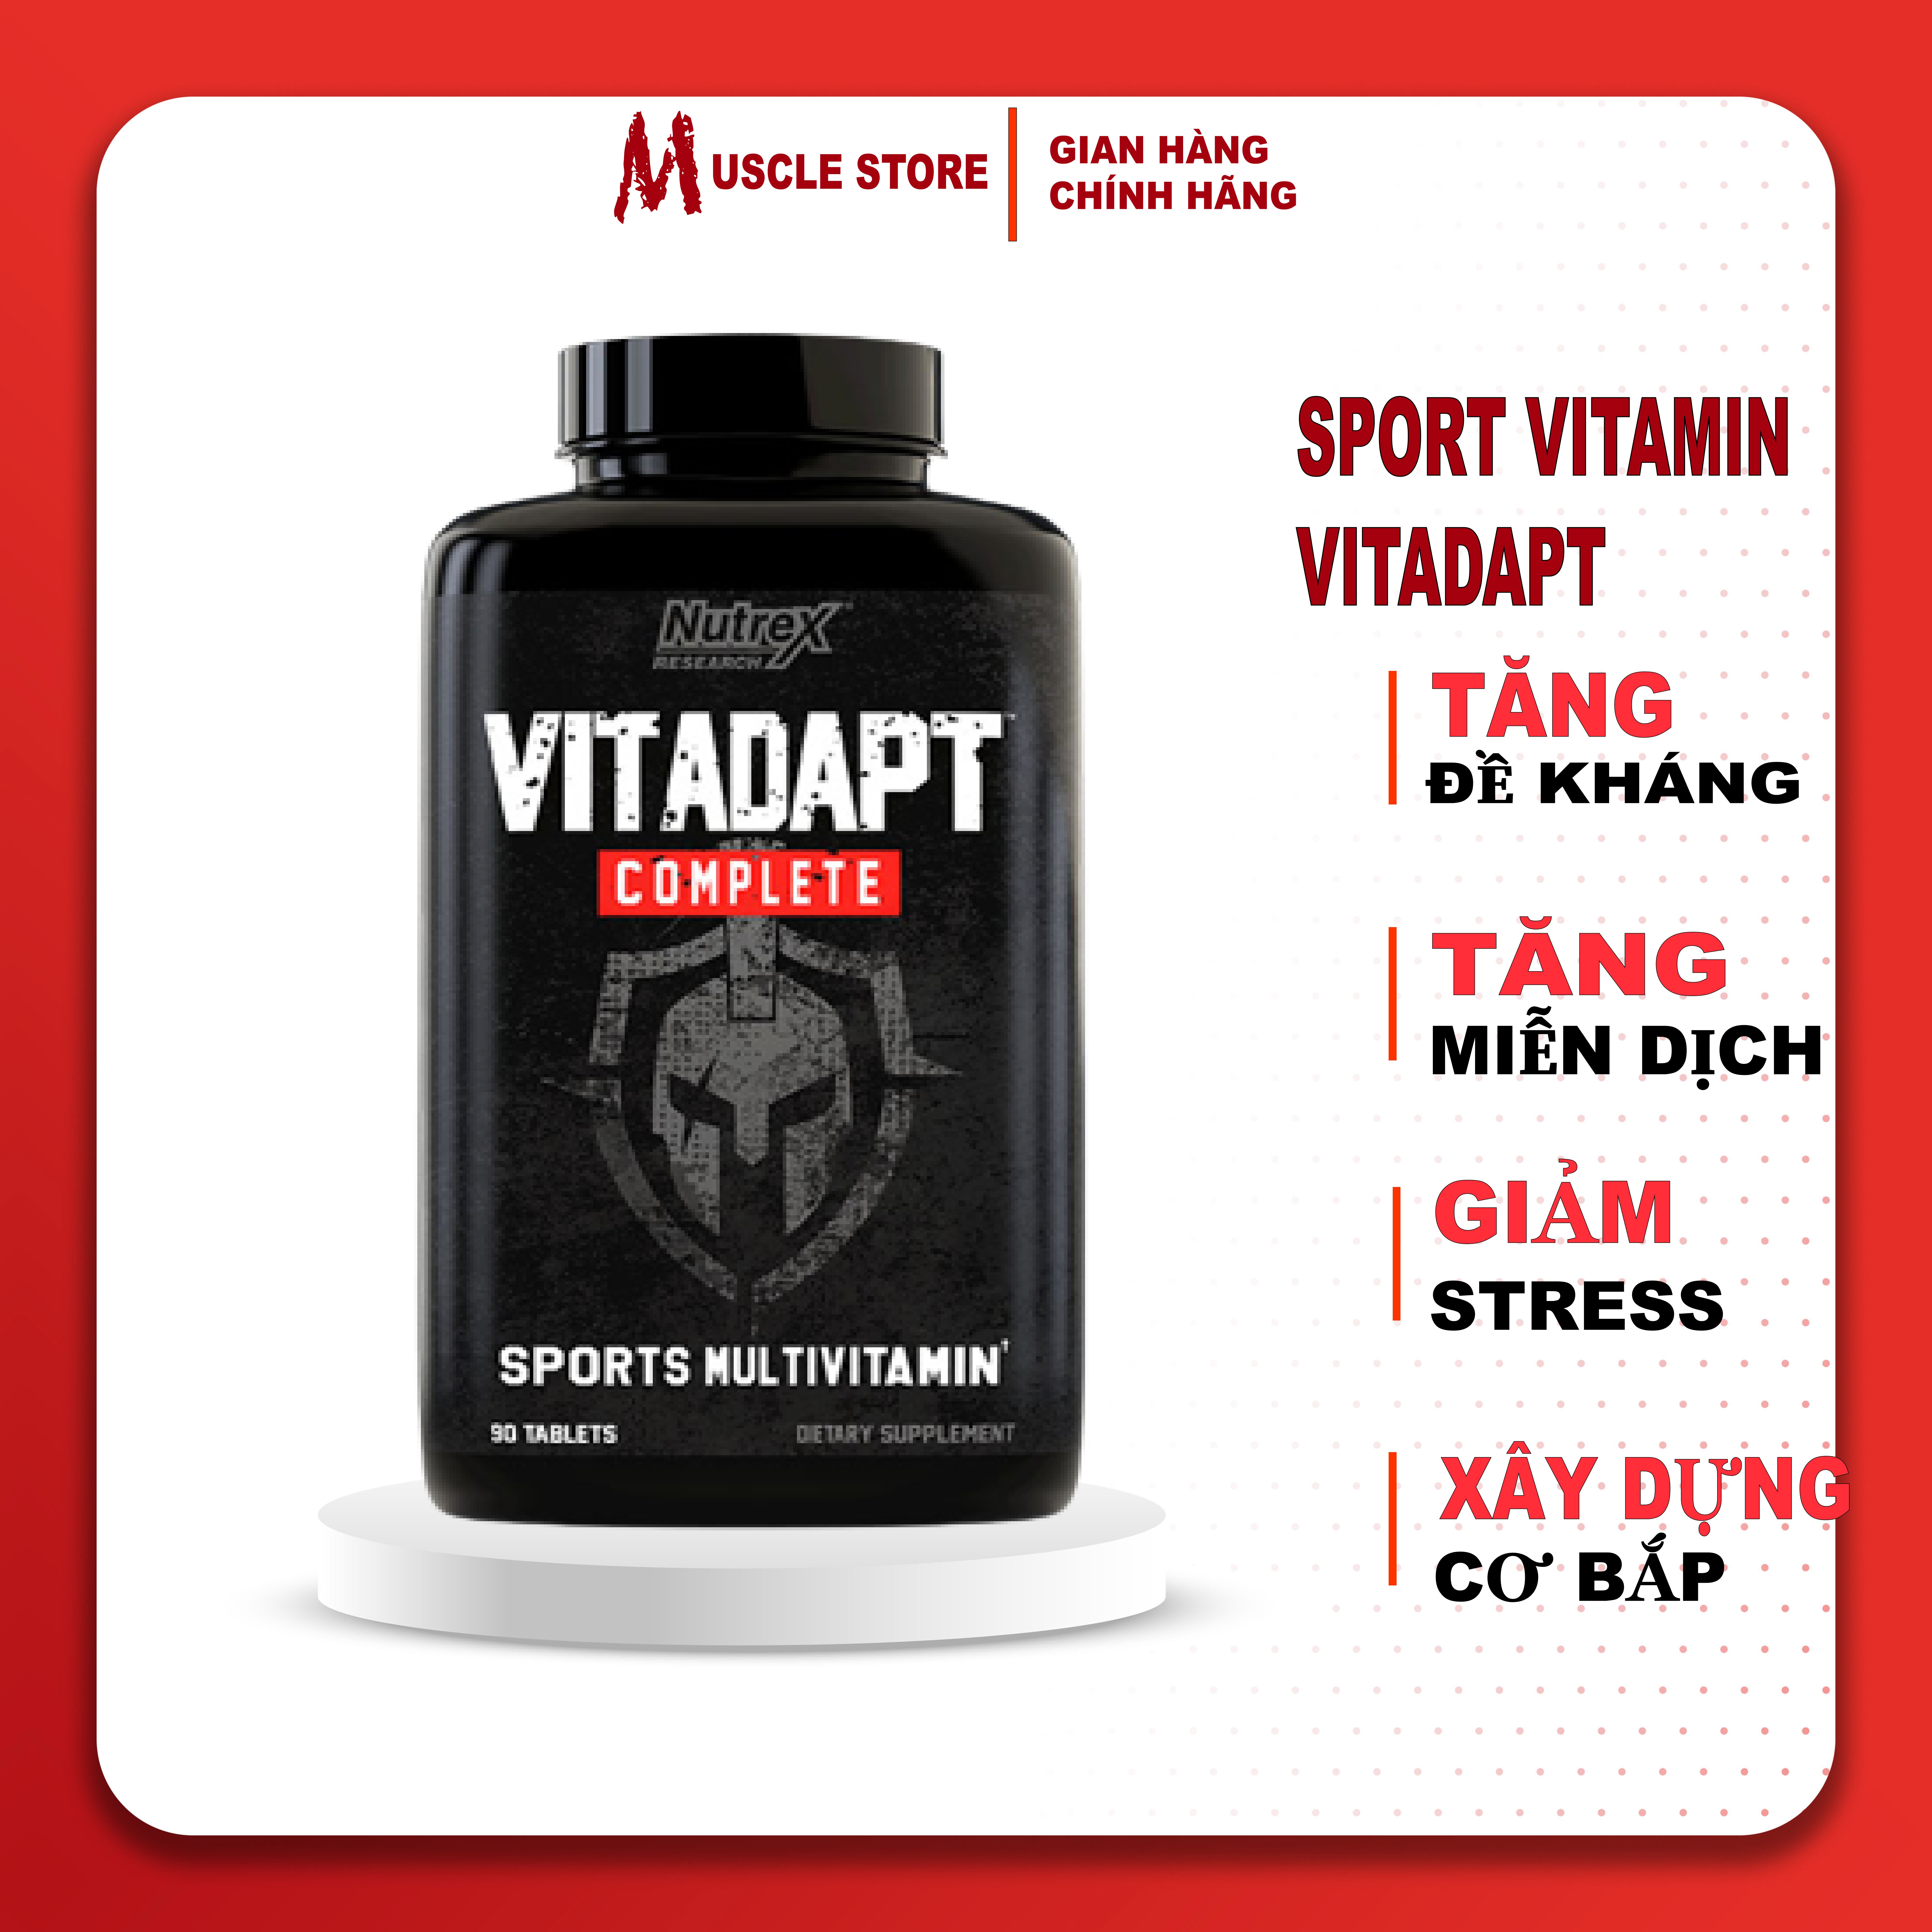 Nutrex Vitadapt, Vitamin Tổng Hợp Thể Thao, Bổ Sung Đầy Đủ Vitamin & Khoáng Chất Thiết Yếu Cho Cơ Thể, 90 viên